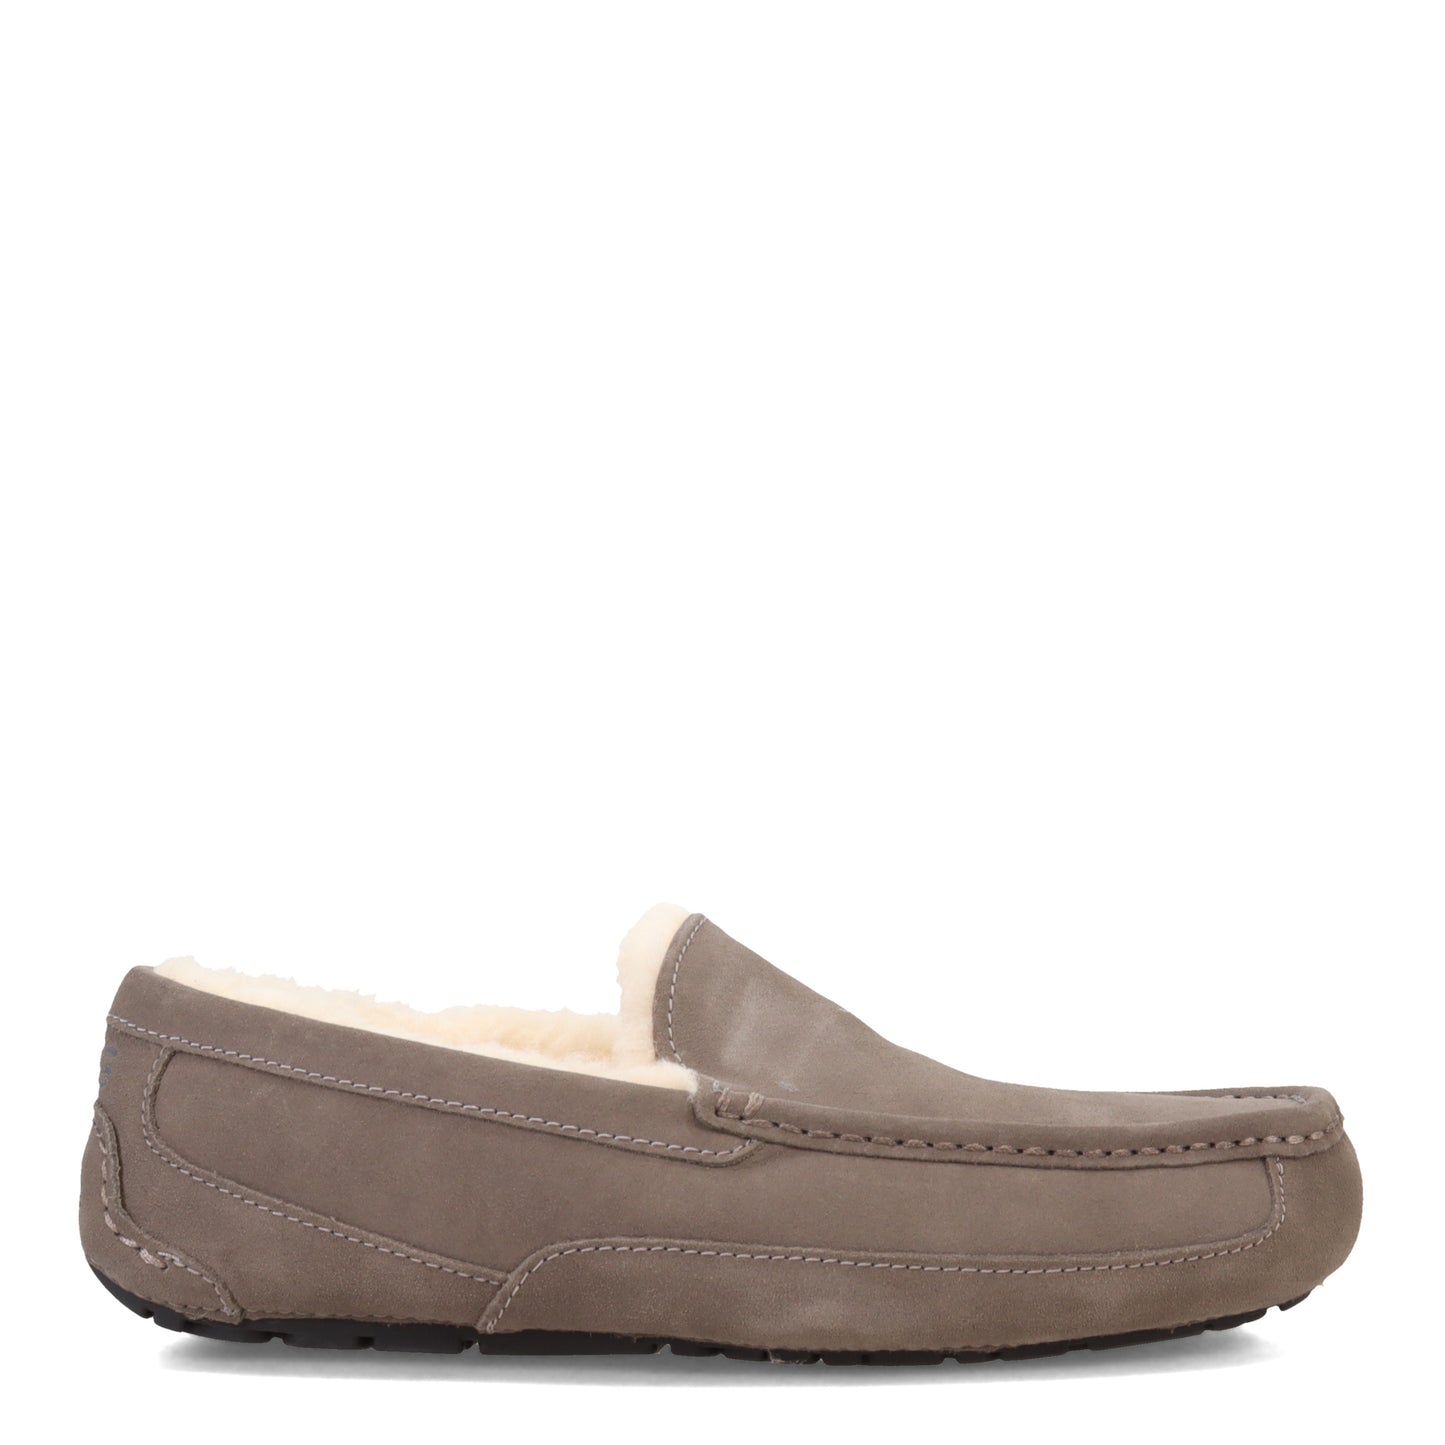 Peltz Shoes  Men's Ugg Ascot Slipper - Wide Width Grey 1101110W-GREY